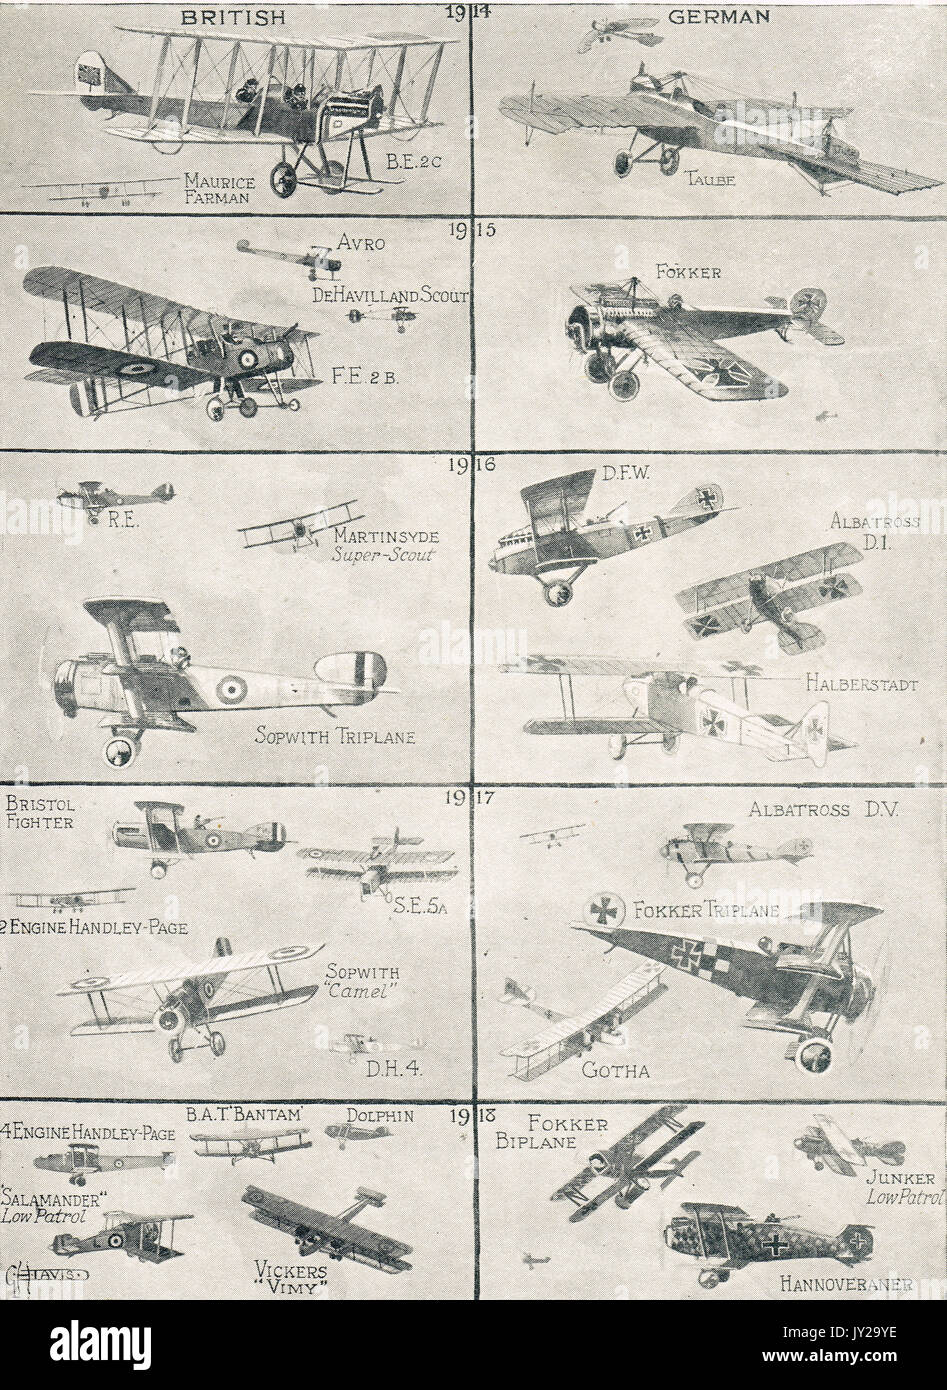 Illustration des types d'avions allemands et britanniques utilisés pendant la WW1 Banque D'Images